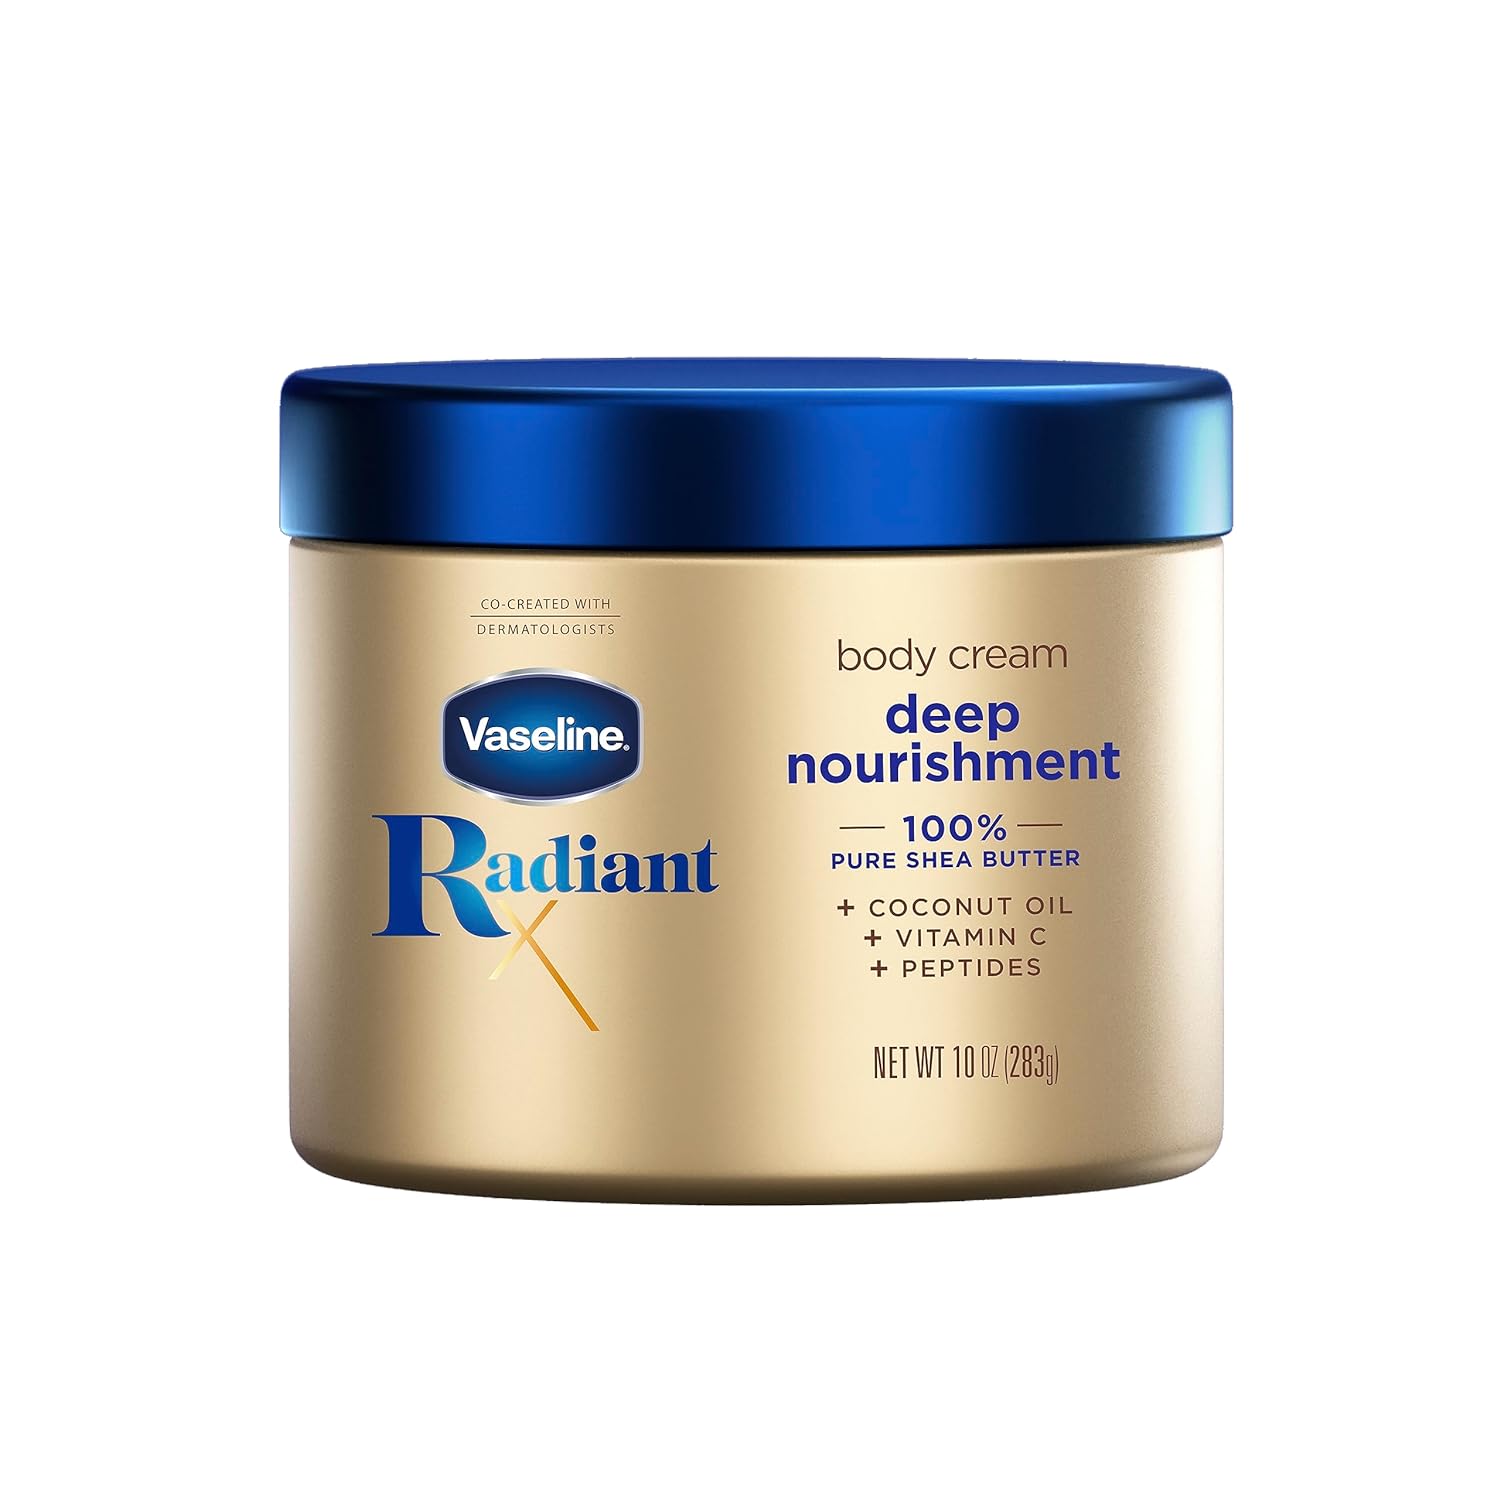 Vaseline Radiant X Deep Nourishment Body Cream 100% Pure Shea Butter, Coconut Oil, Vitamin C, & Peptides 10 oz